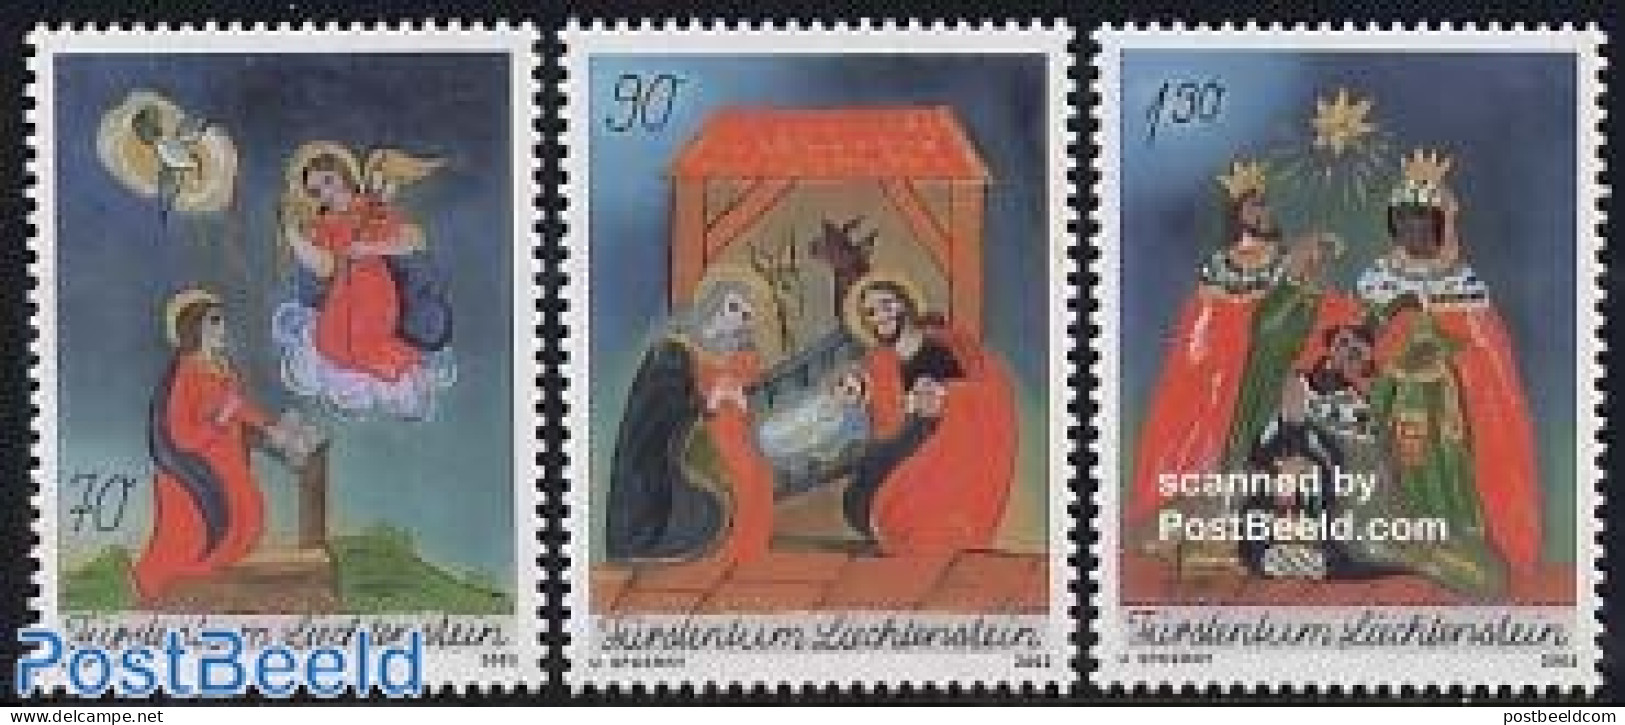 Liechtenstein 2003 Christmas 3v, Mint NH, Religion - Christmas - Neufs